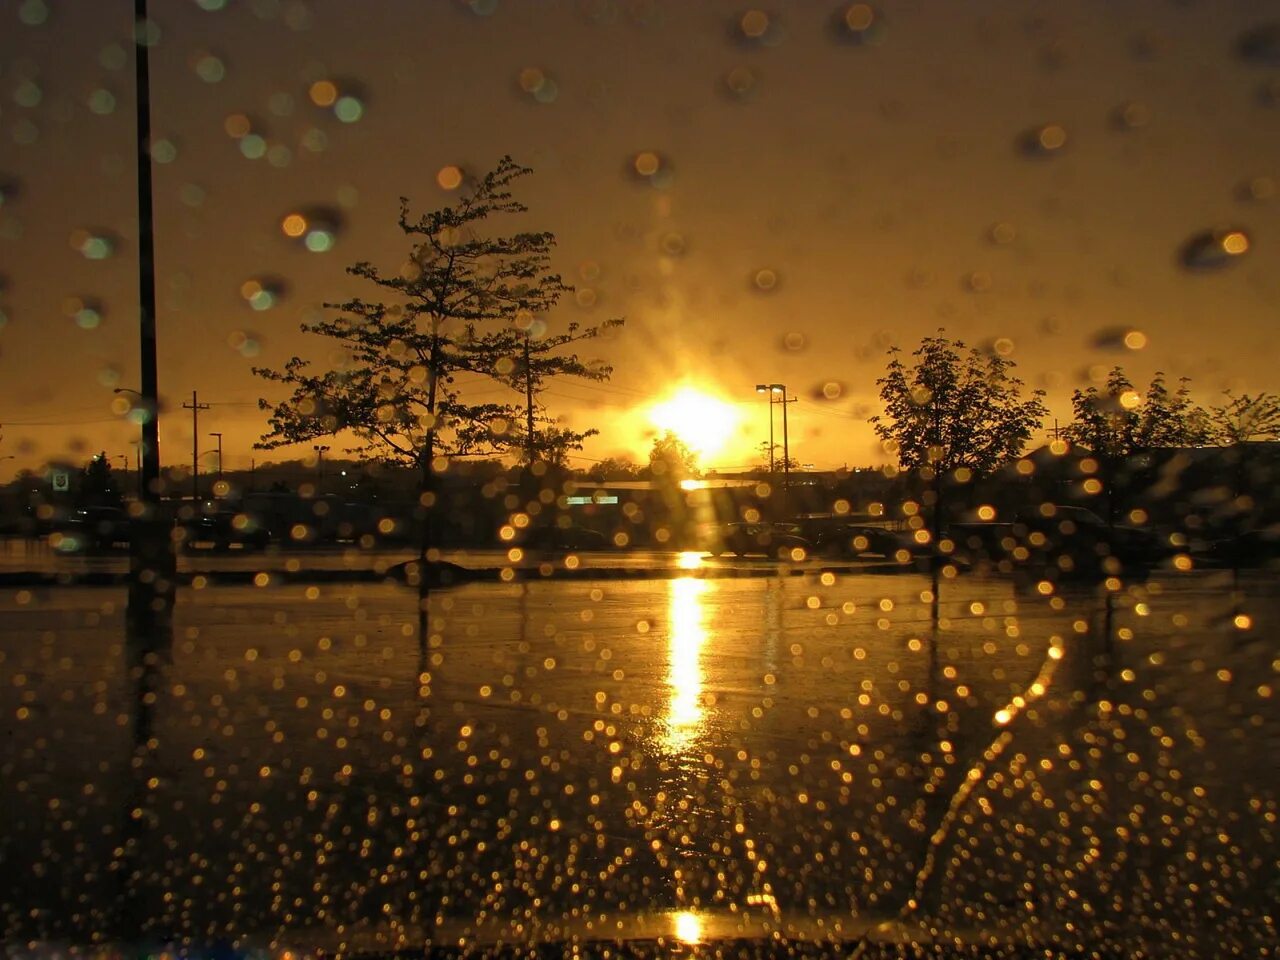 При попадании солнечного света на капли дождя. Солнце после дождя. Дождь и солнце. "Дождливый вечер". Дождливый летний вечер.